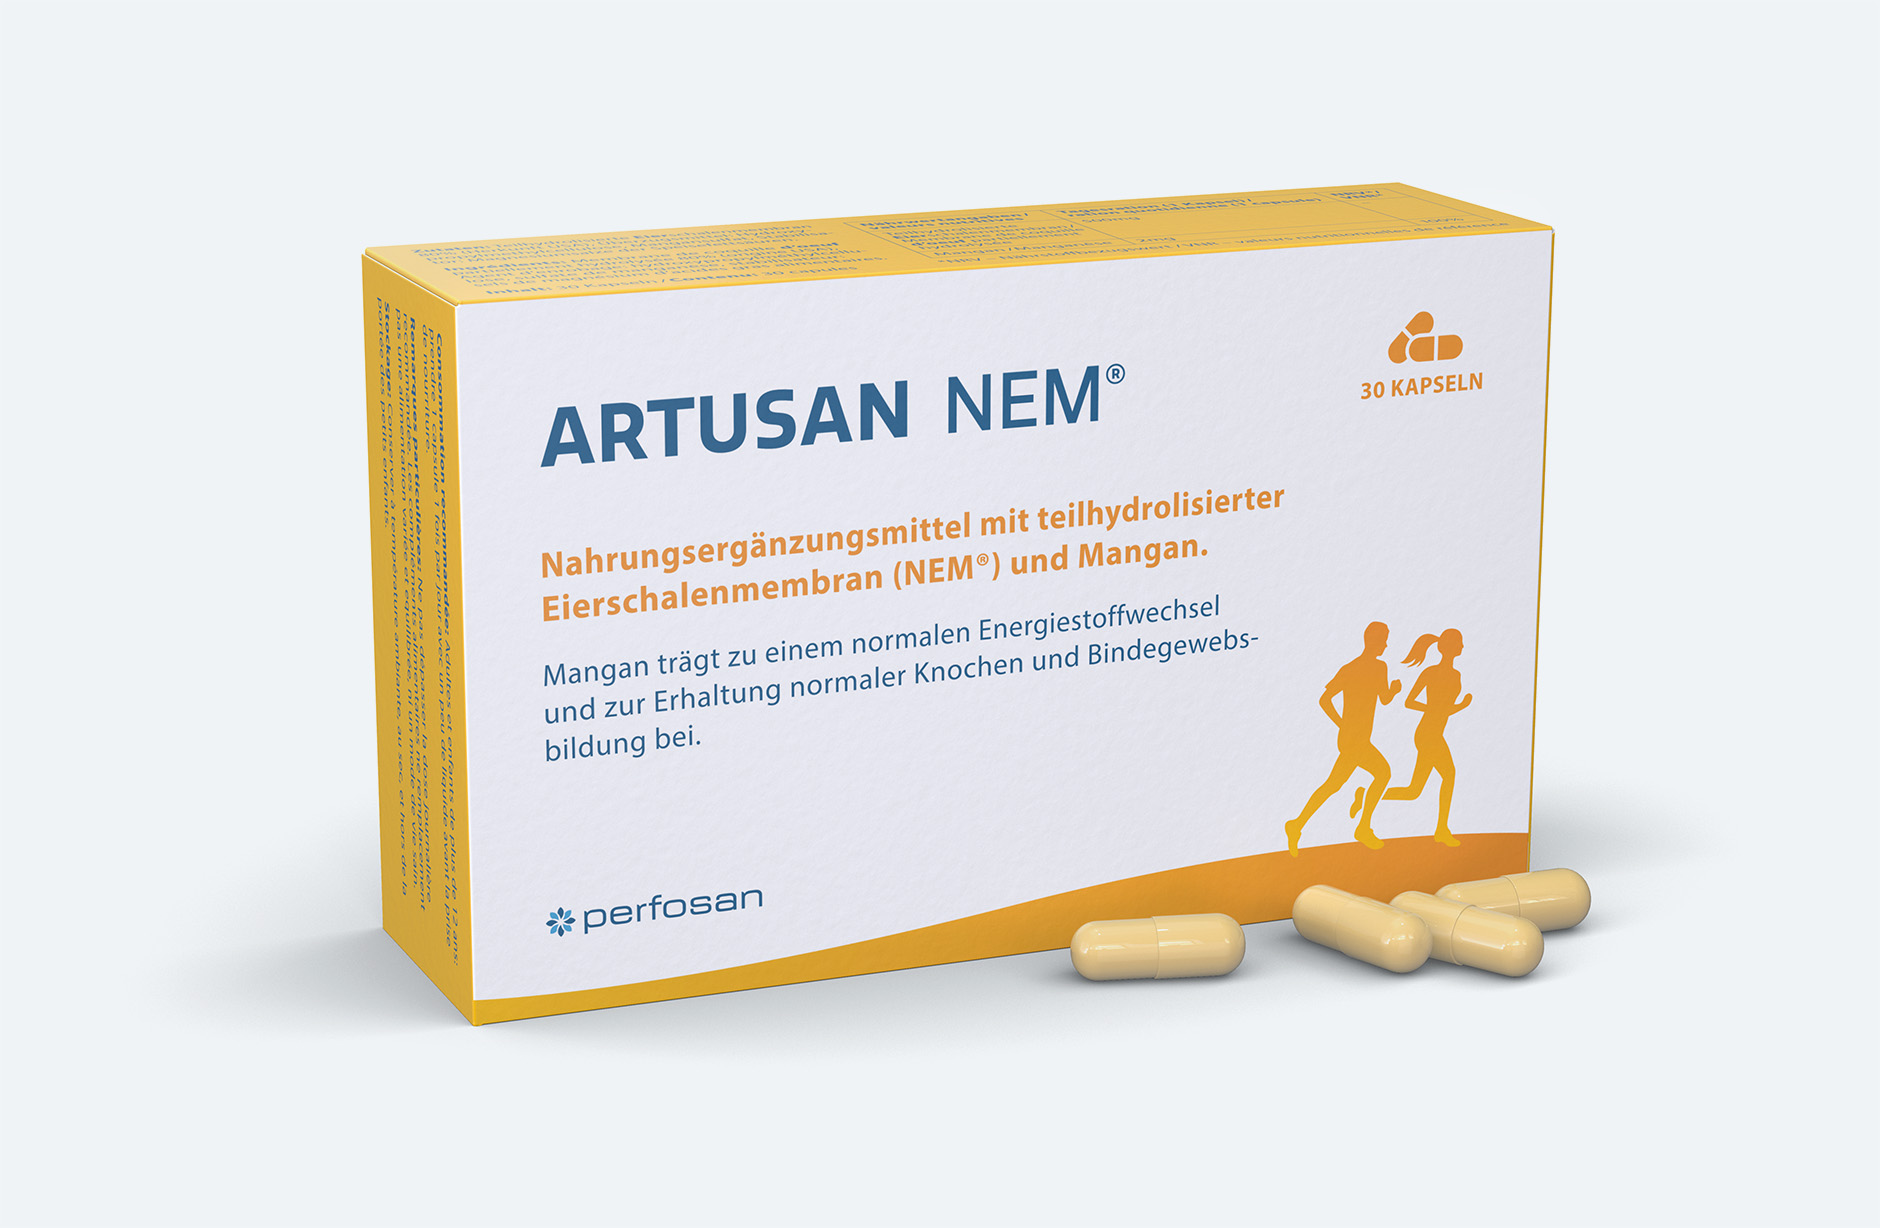 Artusan NEM Verpackung – Newsign GmbH